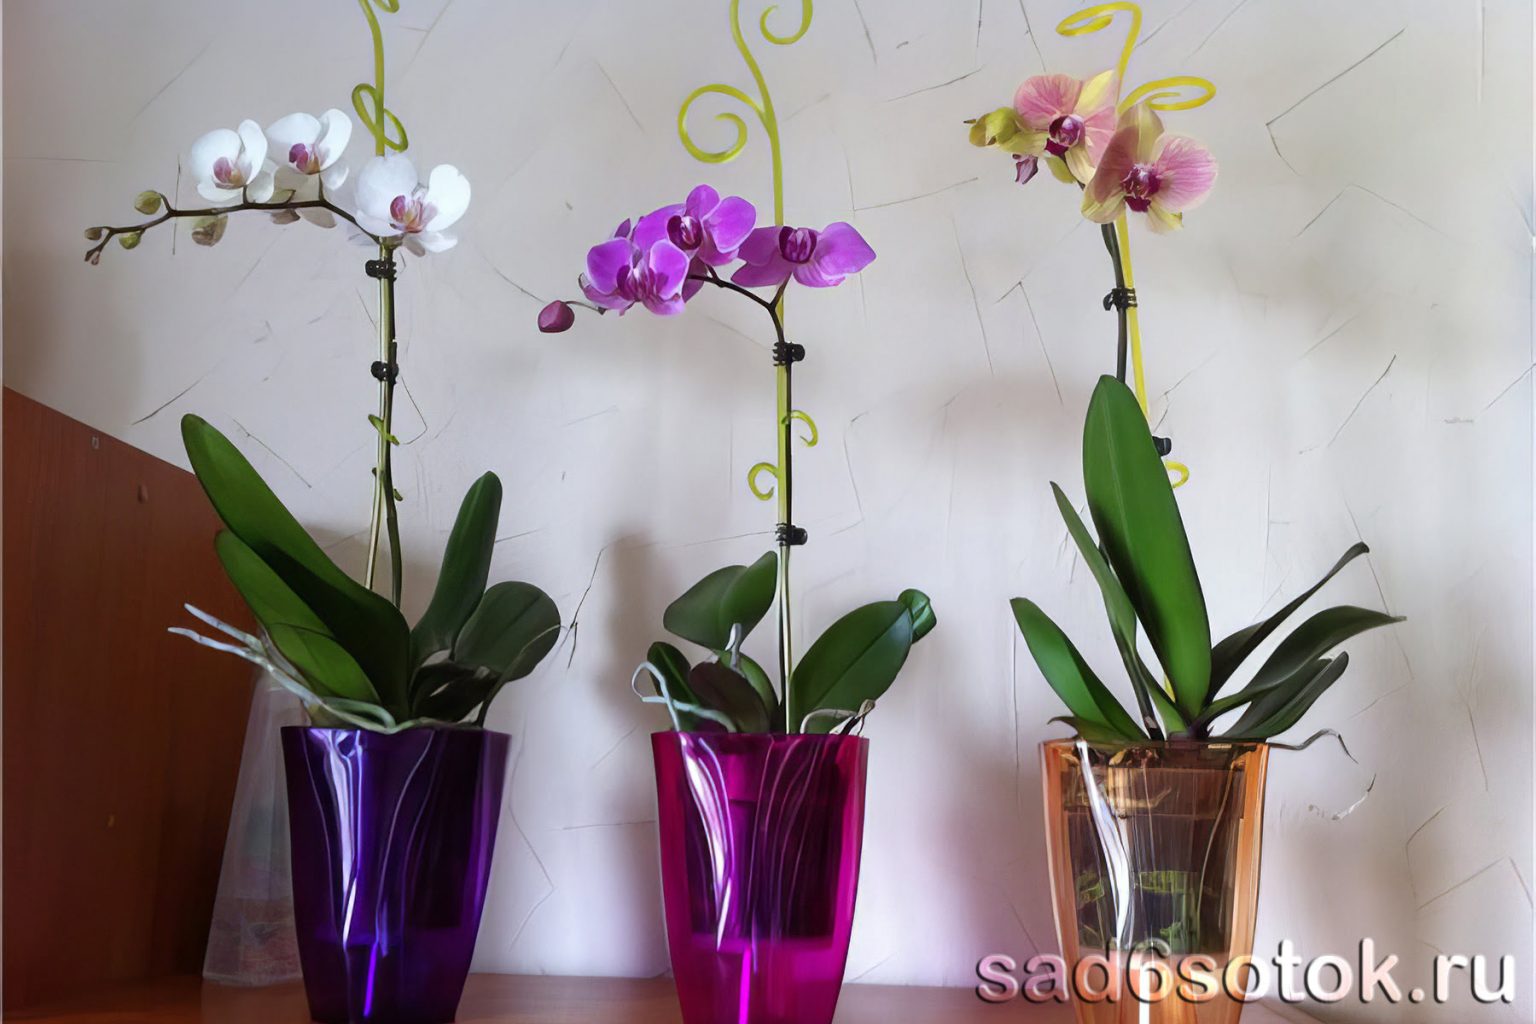 Как сажать орхидею в горшок. Прозрачный горшок для Орхидея фаленопсис. Орхидея фаленопсис 1 горшок. Дендрофаленопсис Орхидея. Орхидея фаленопсис в горшке.